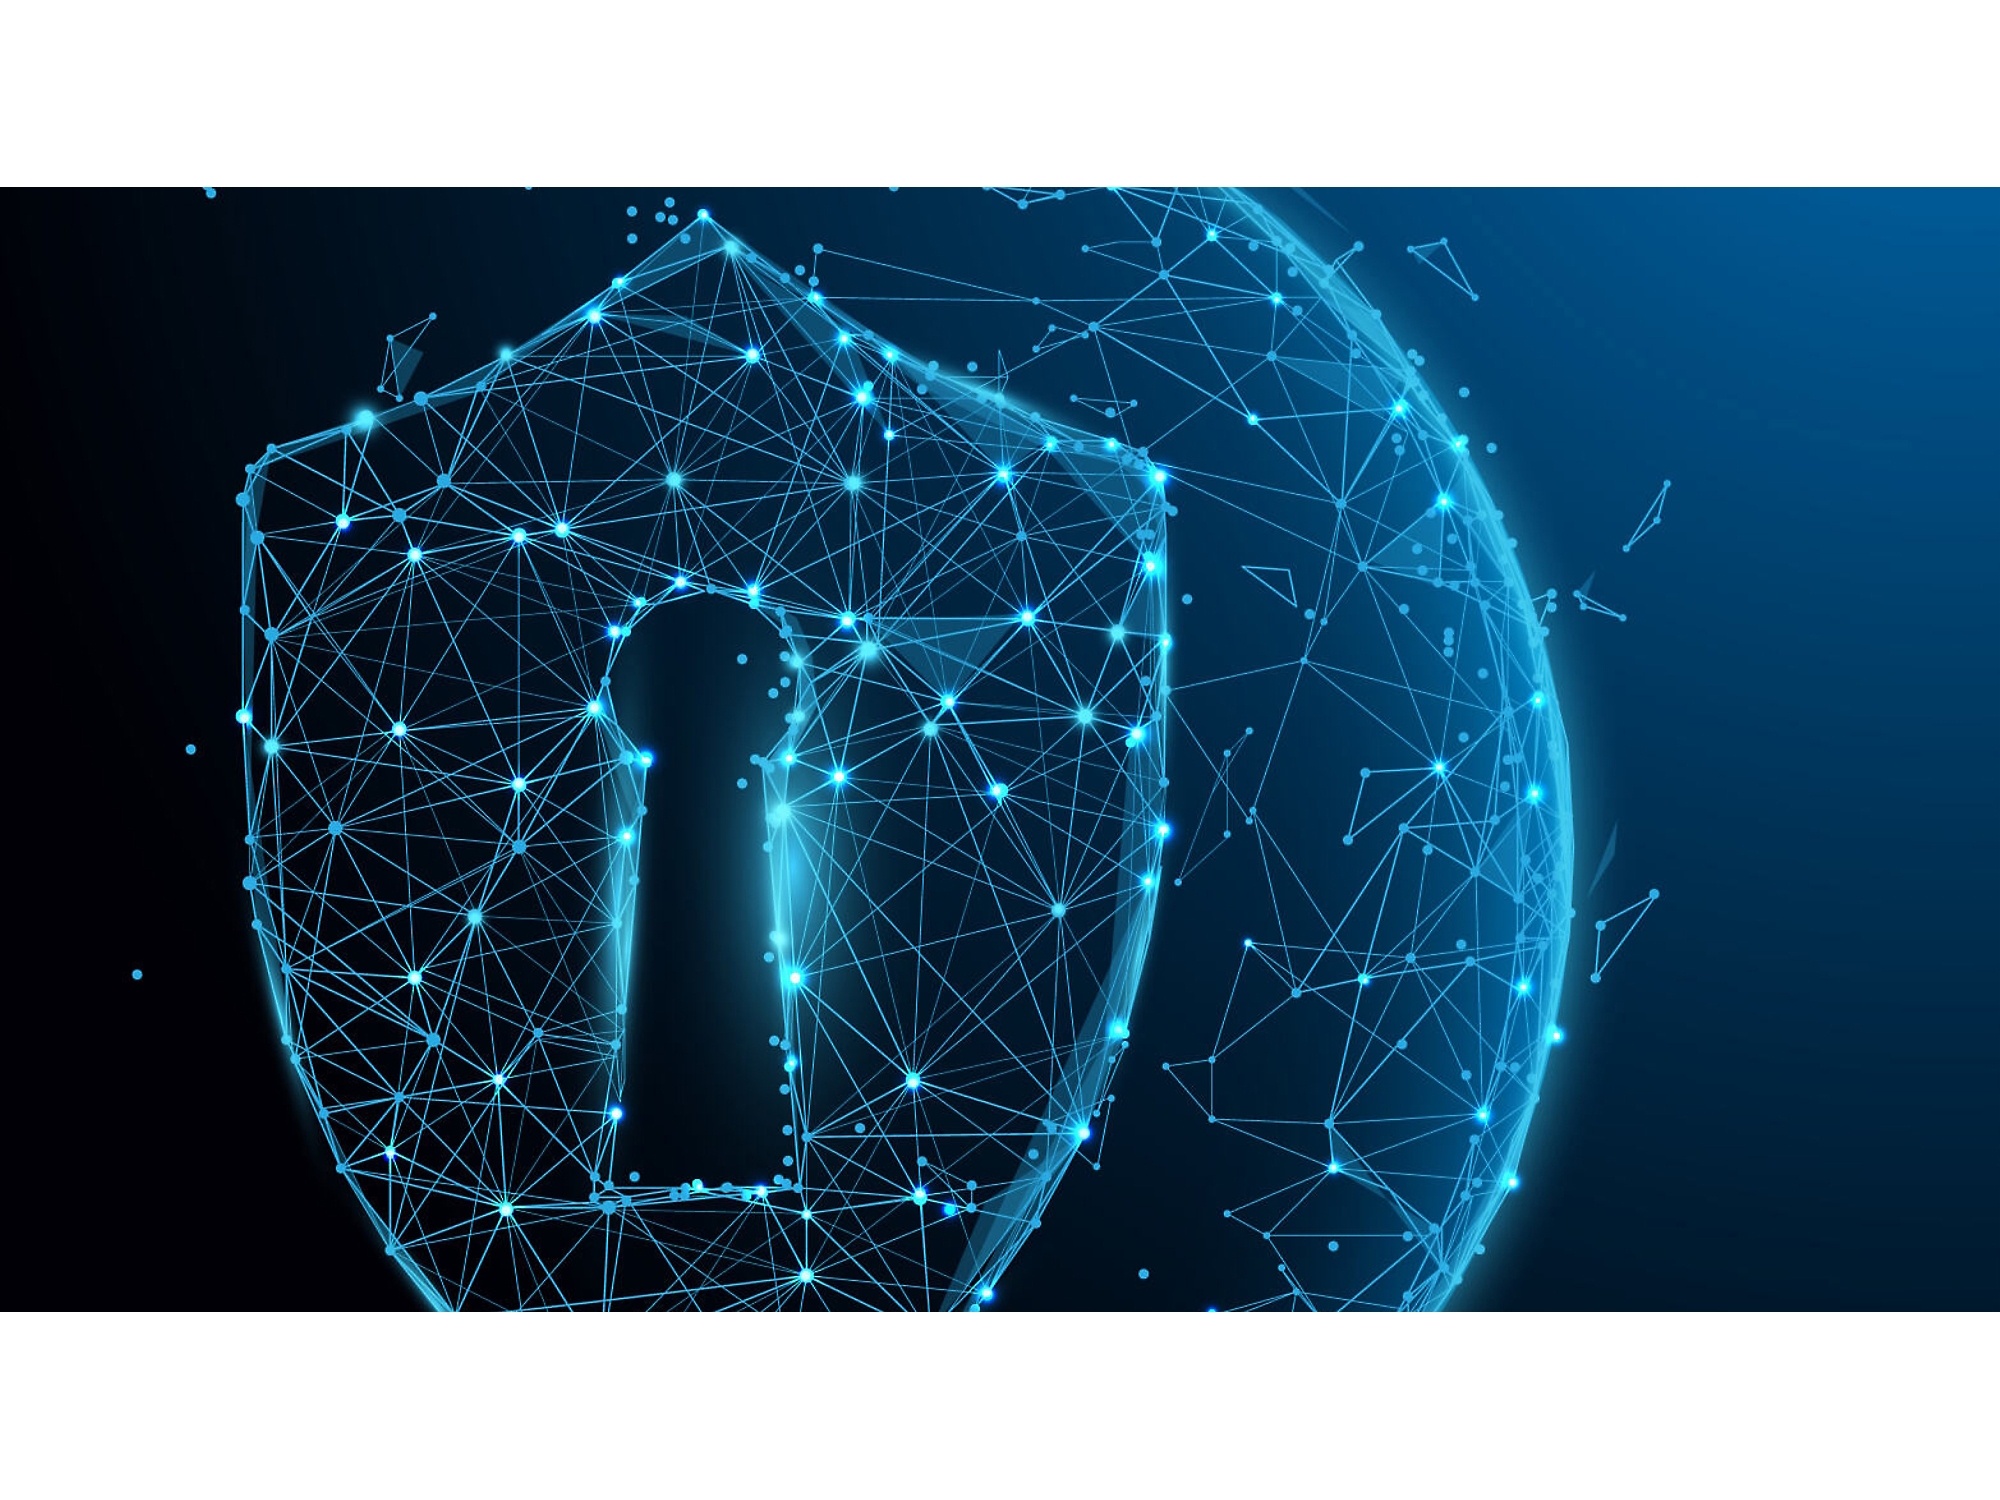 Ilustración digital de un escudo de estructura metálica azul brillante con un ojo de cerradura, que representa la ciberseguridad